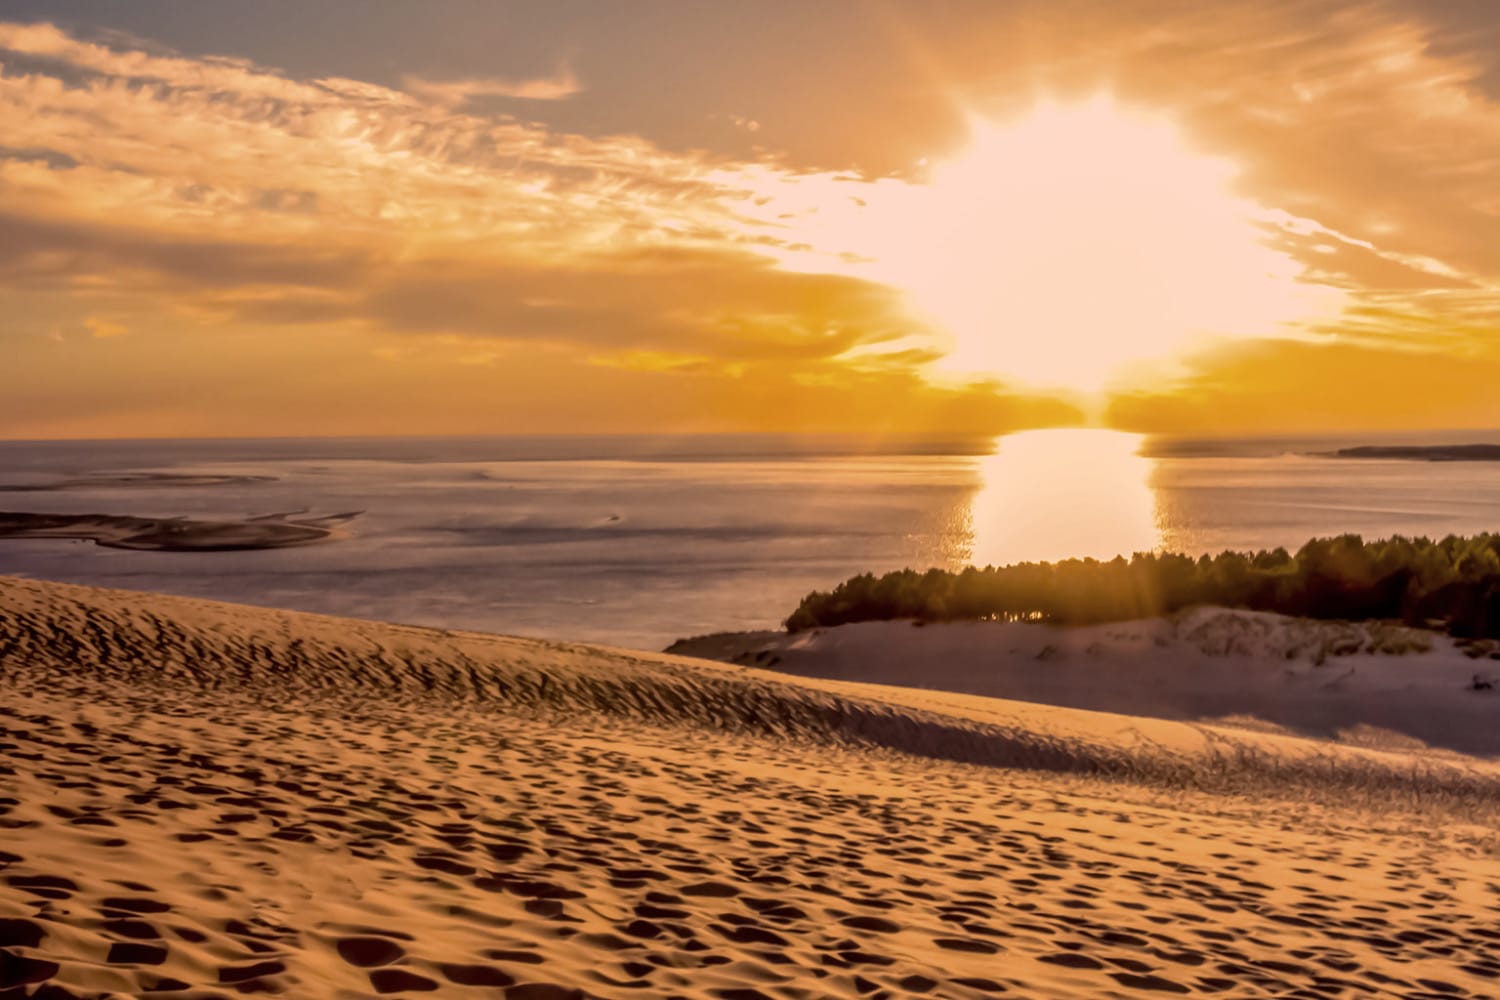 Des millefeuilles de sable se forment en une nuit sur la Dune du Pila immortalisés par Florian Clément le 11 décembre 2022.